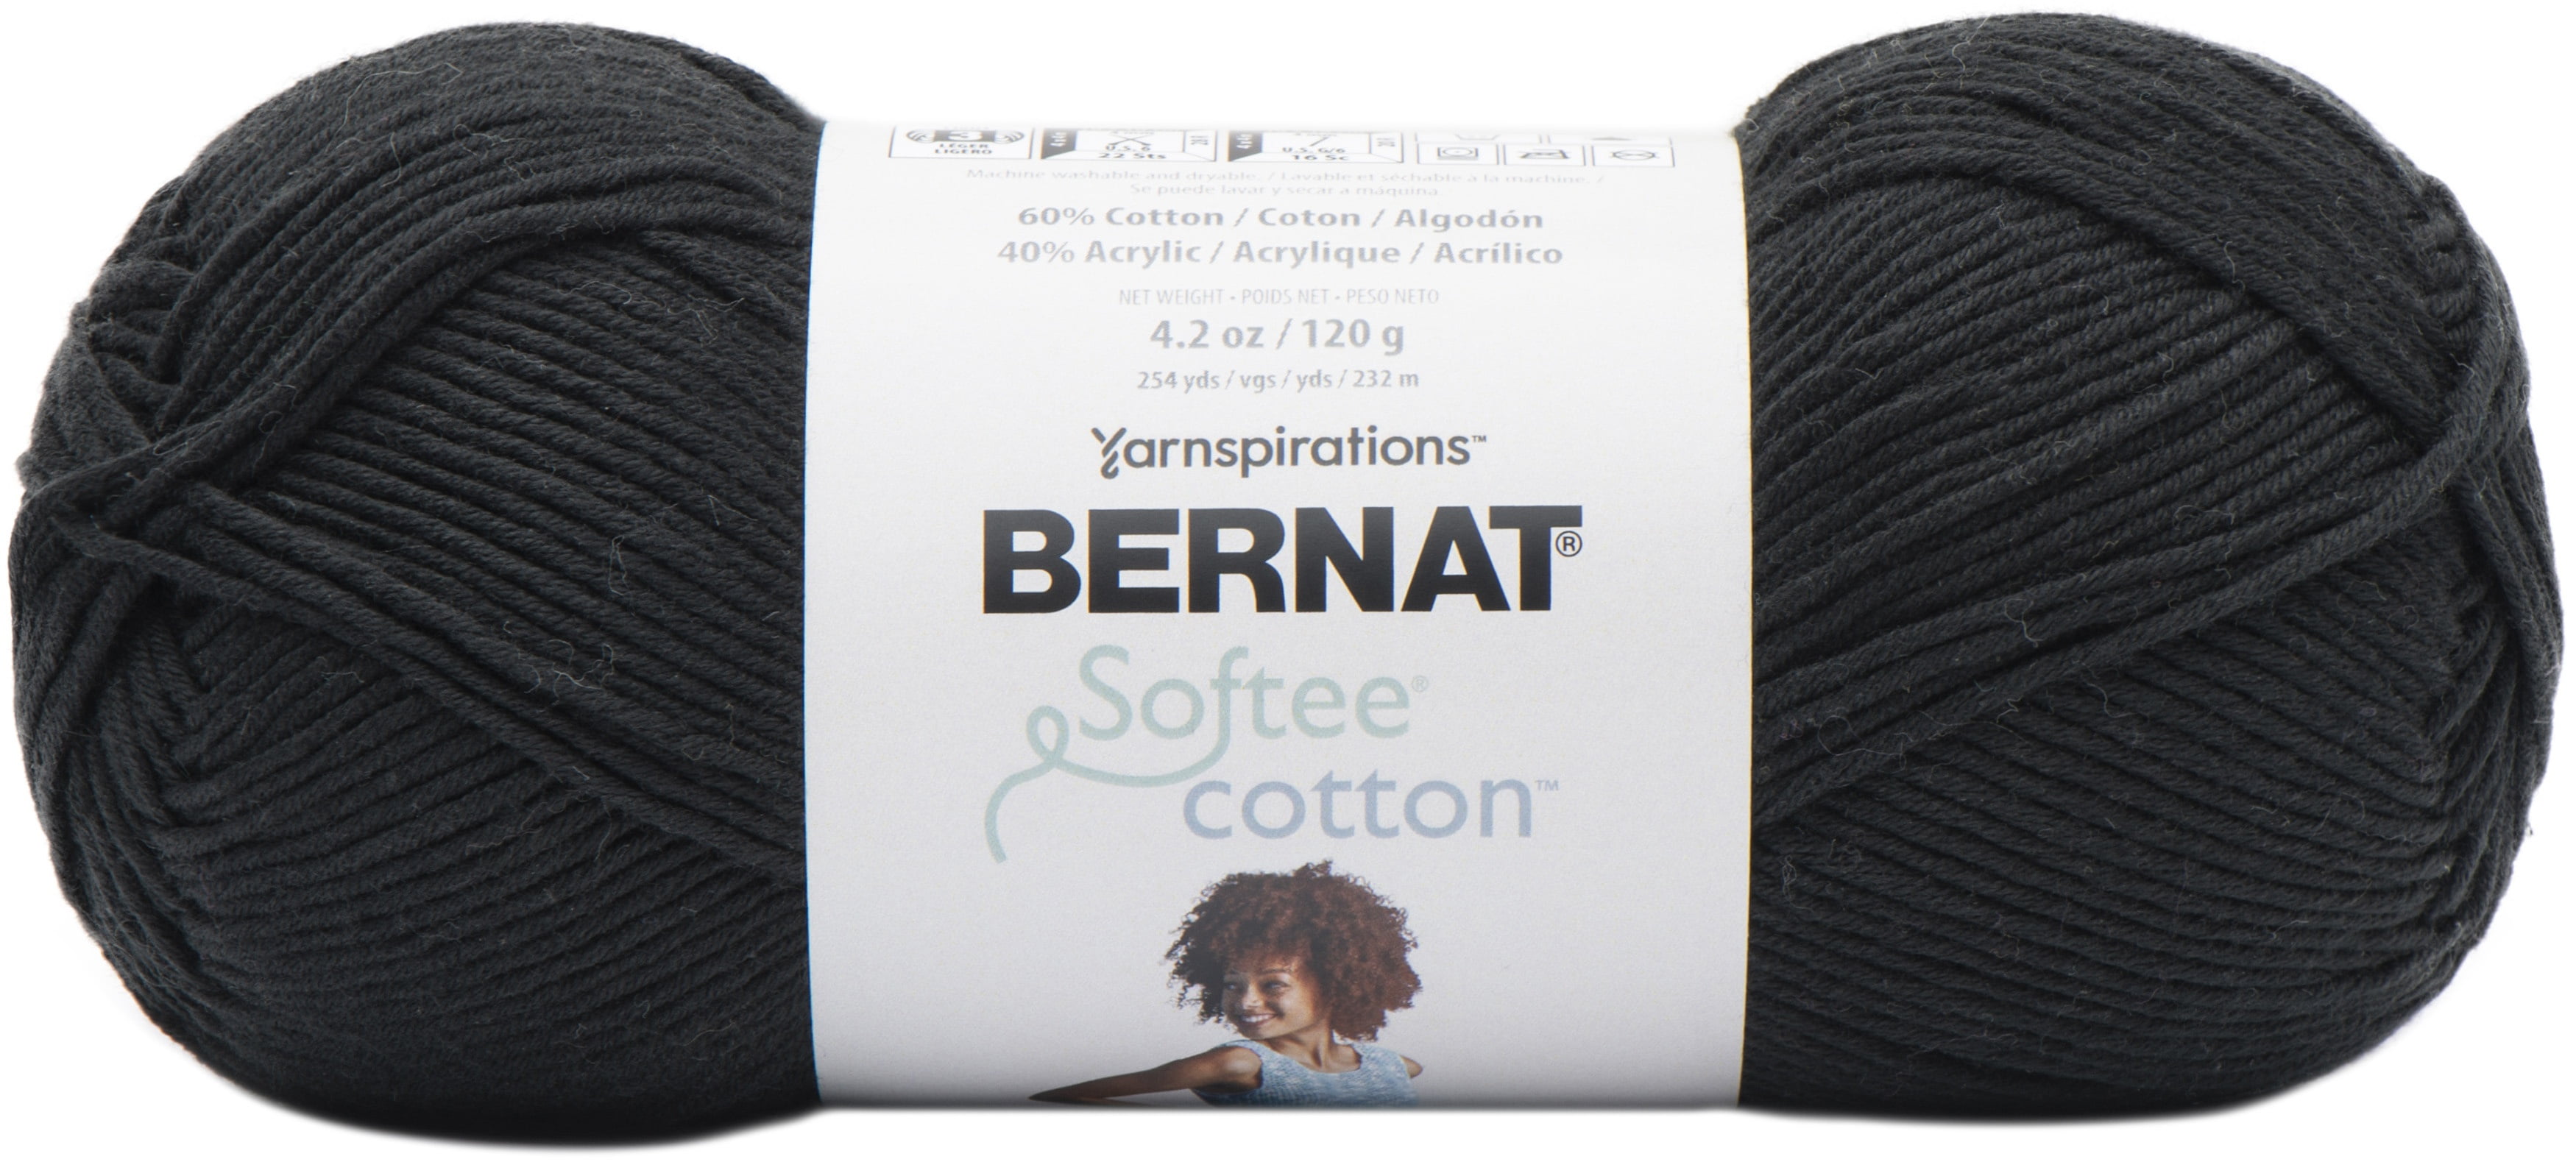 Bernat Softee Cotton Yarn Seaside Blue